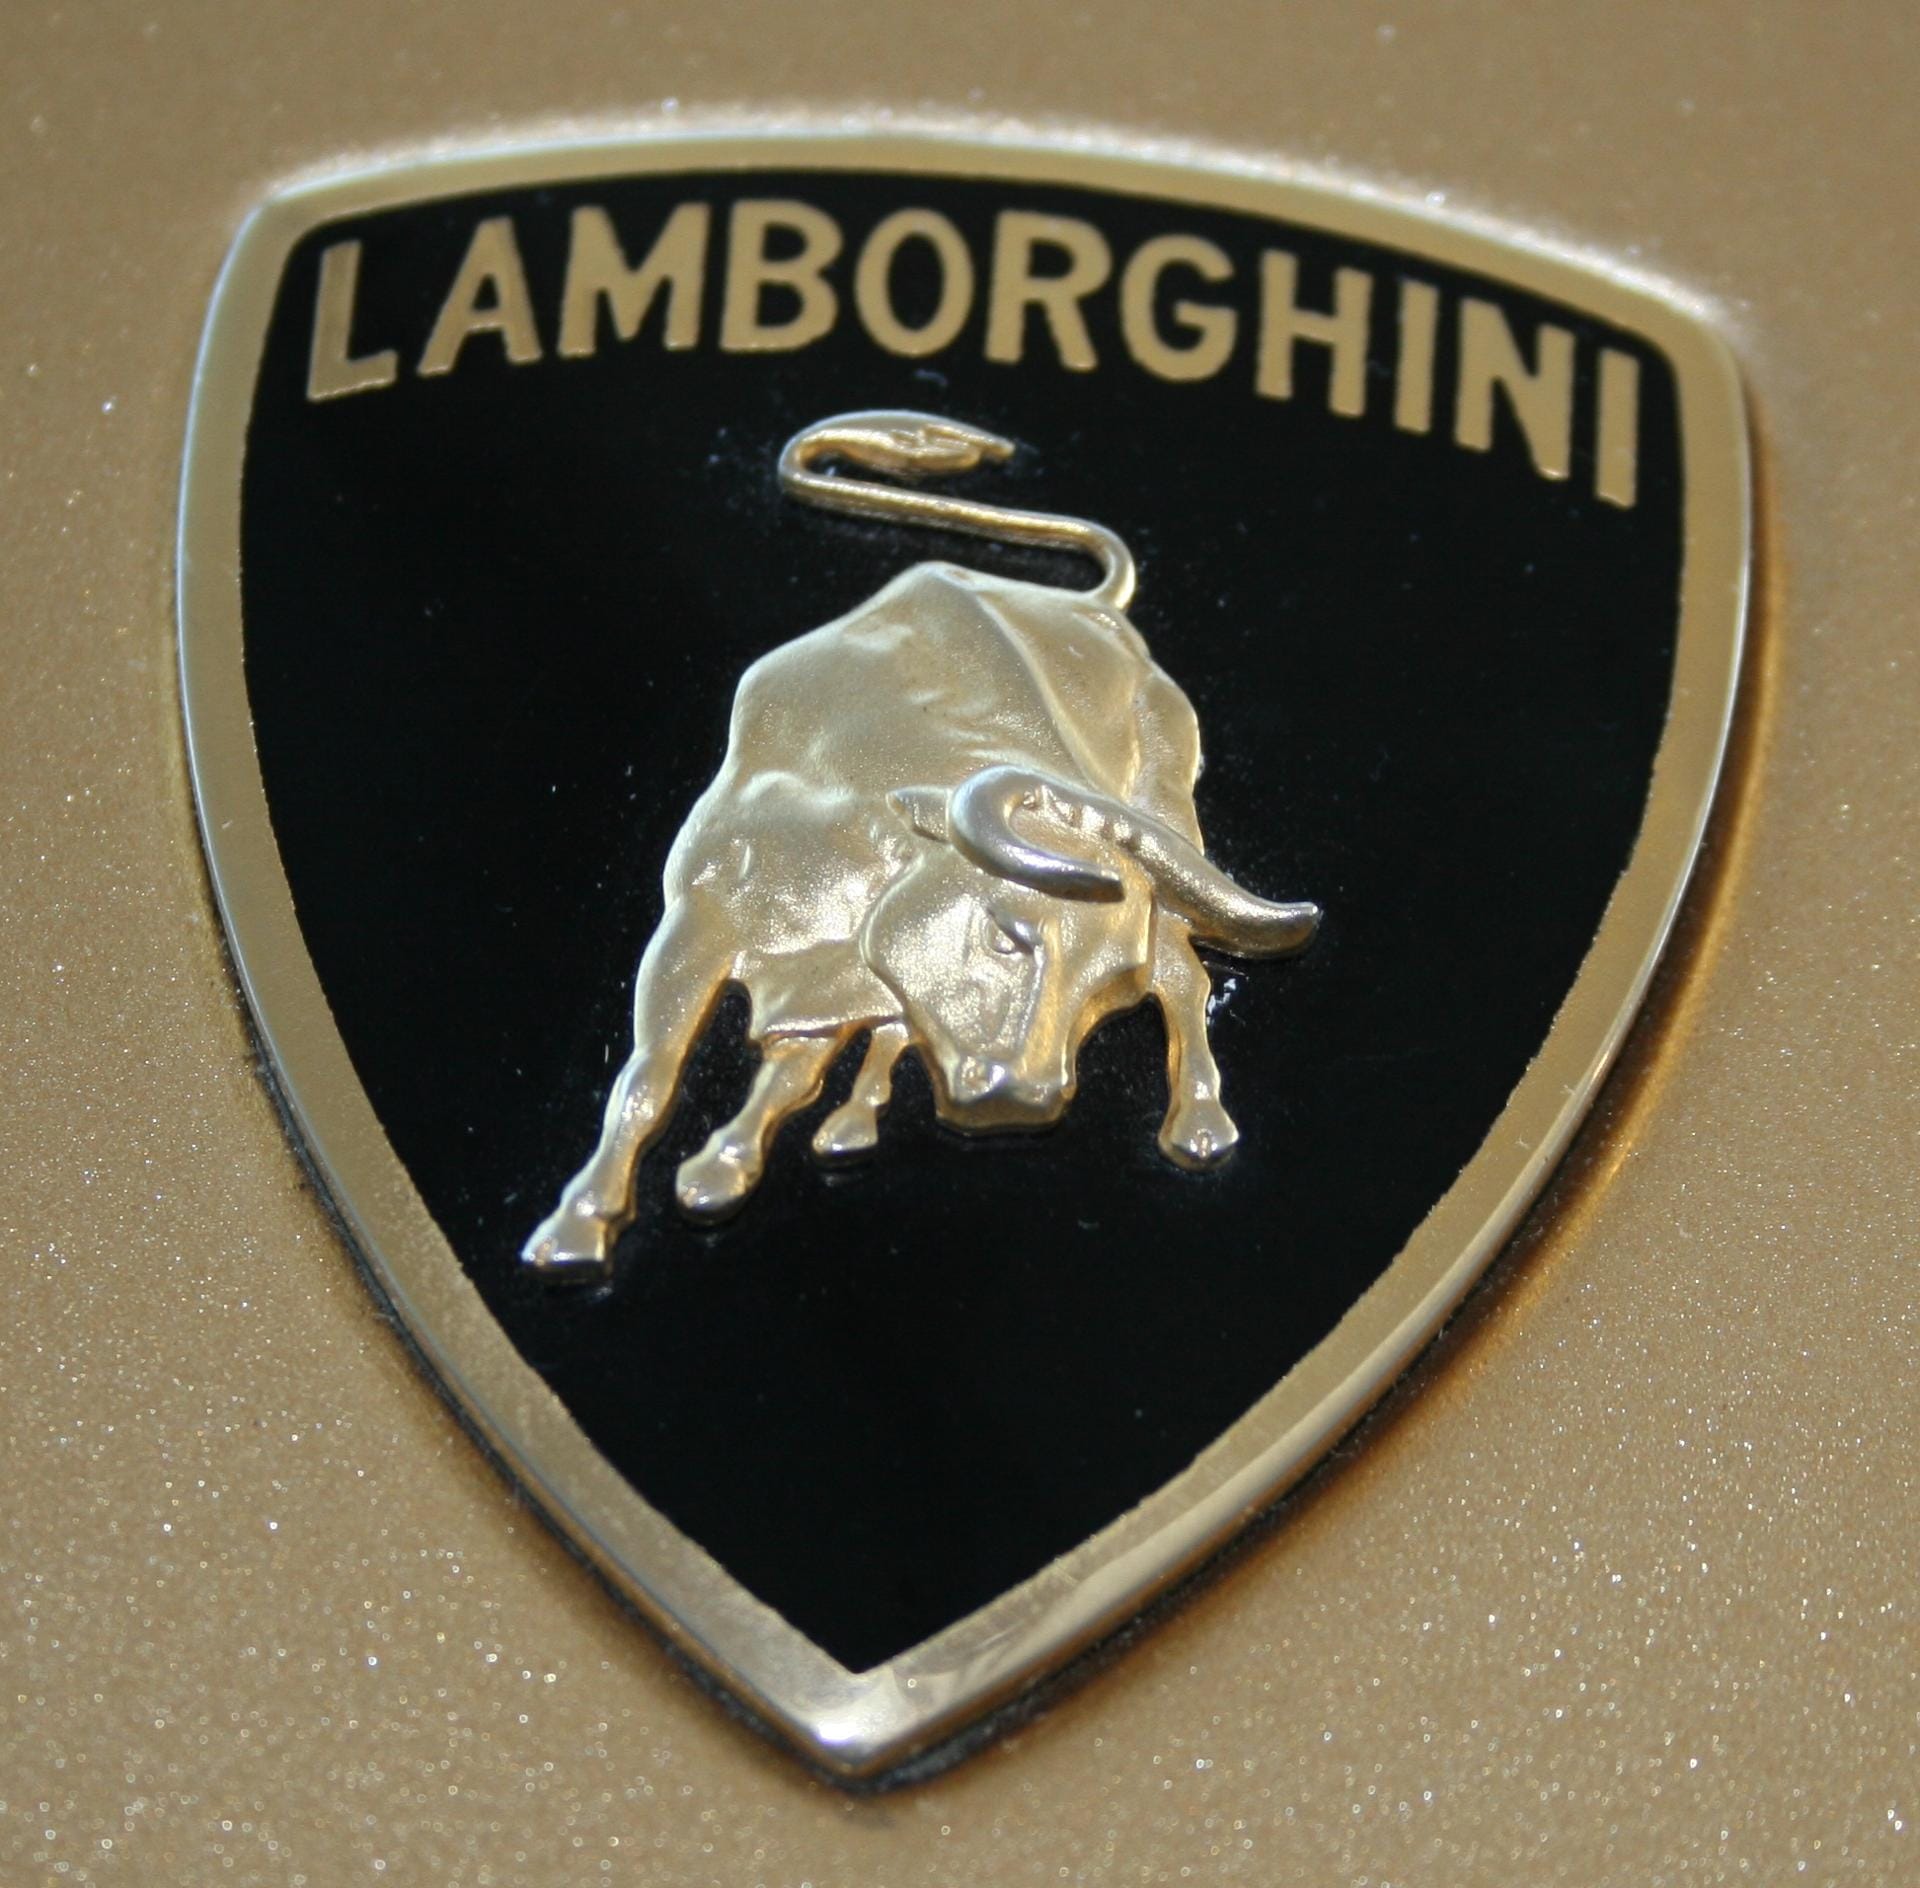 Ein Stier ziert traditionell das Logo des Sportwagenbauers.